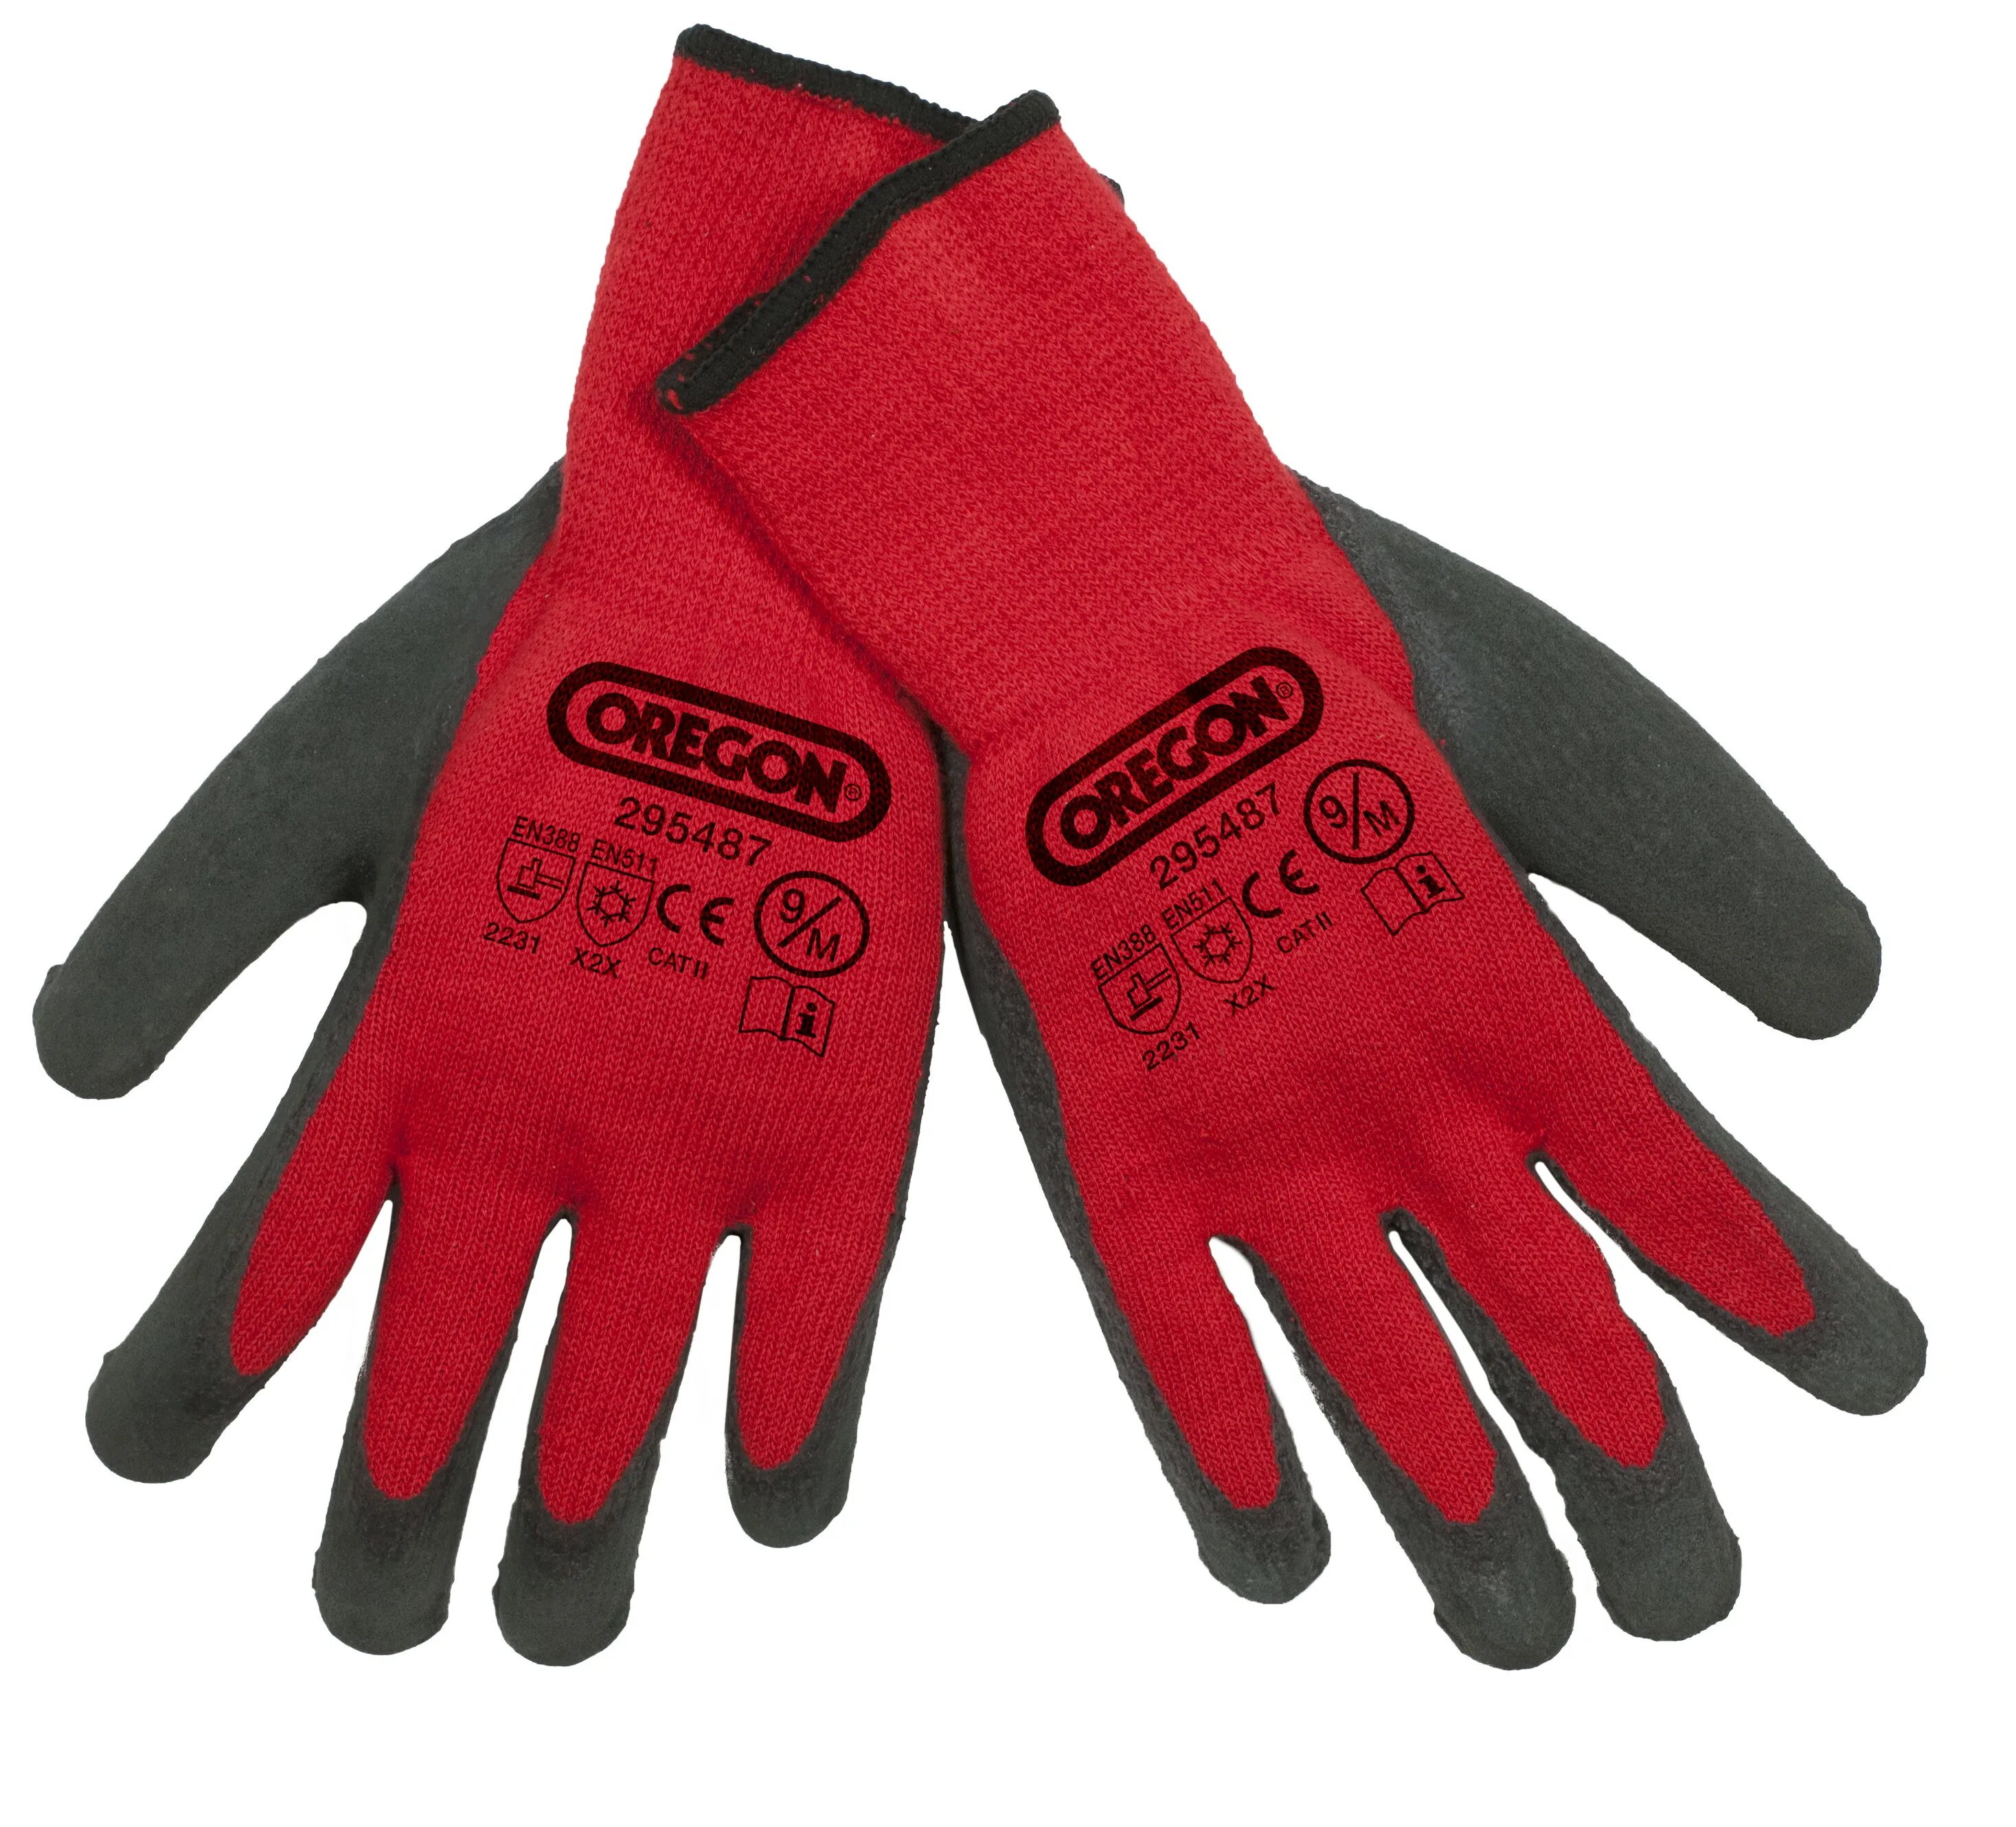 Перчатки 295487 Oregon. Oregon перчатки защитные. Защитные утепленные перчатки Oregon. 295487/L.